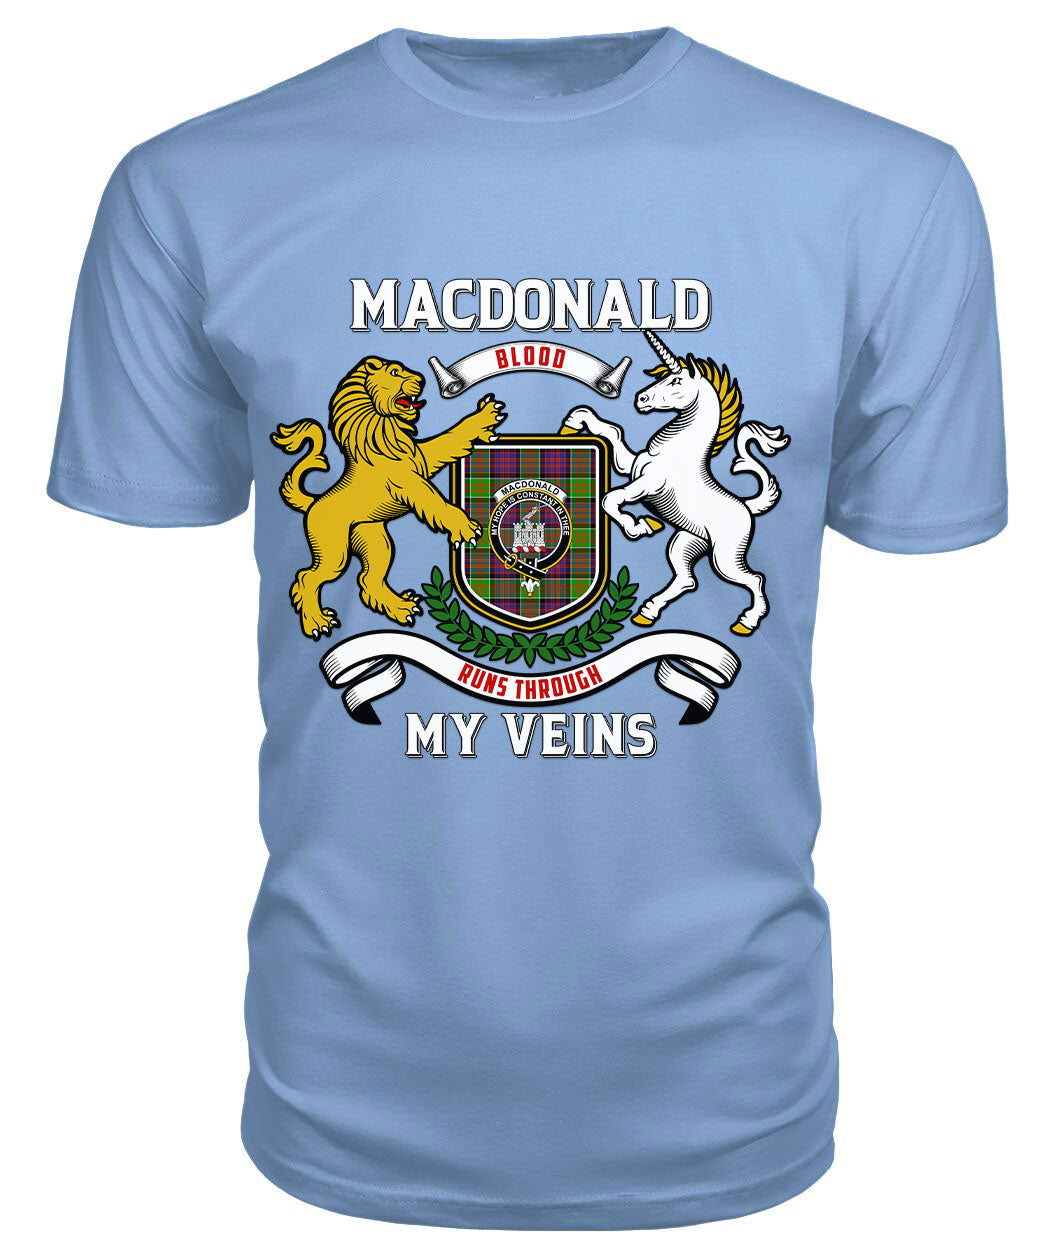 MacDonald (Clan Ranald) Tartan Crest 2D T-shirt - Blood Runs Through My Veins Style